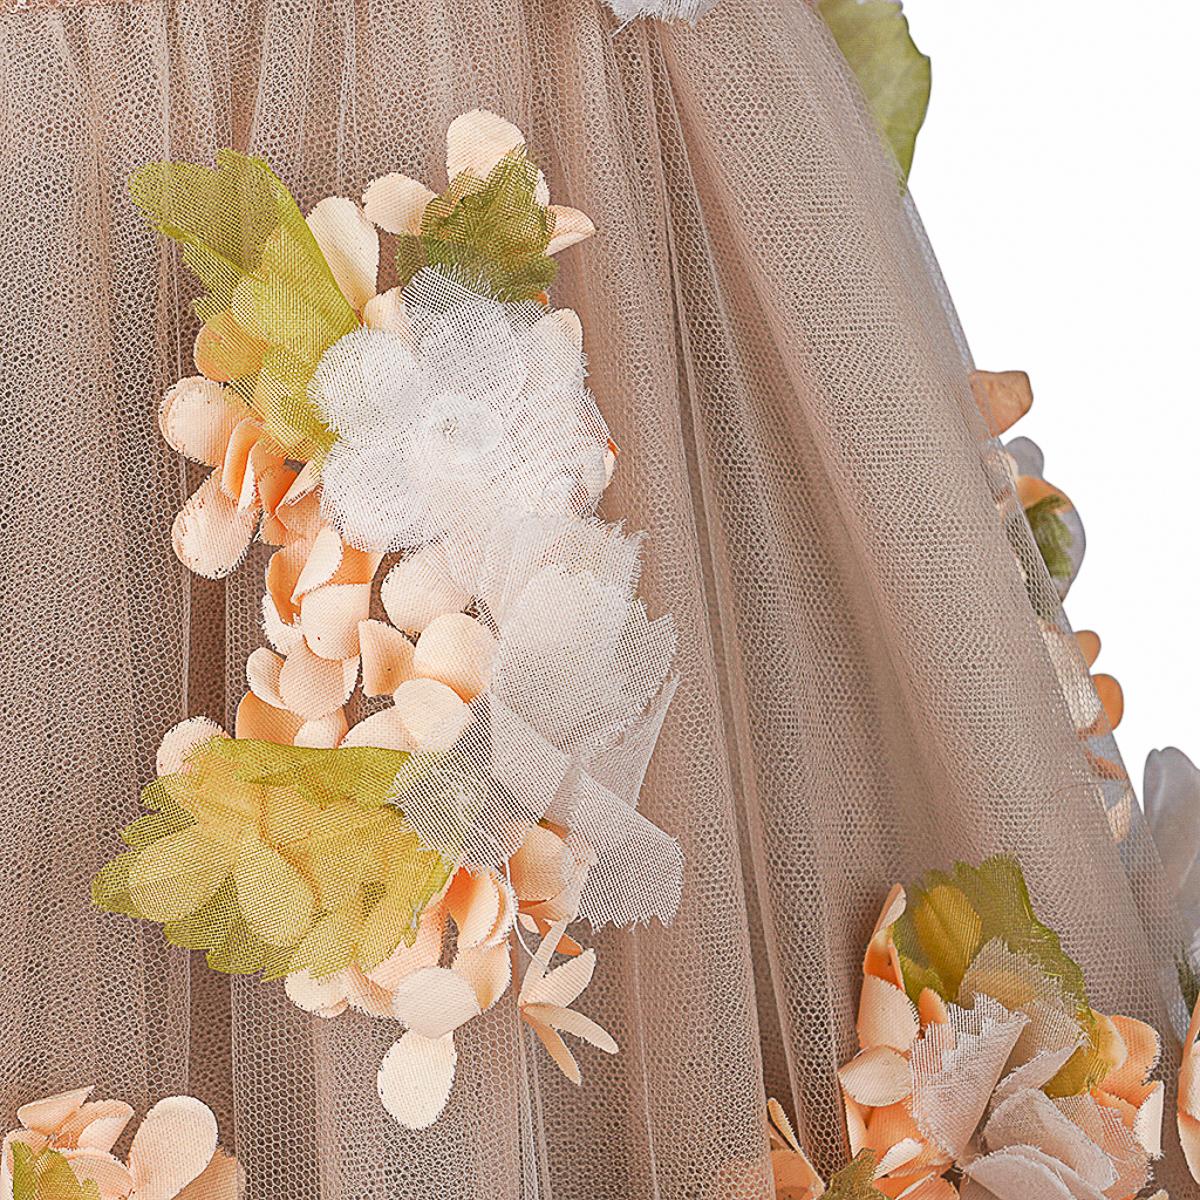 Valentino Trägerloses Empire-Kleid in Nude mit Blumenschmuck 1 von 2 Größe 0 5